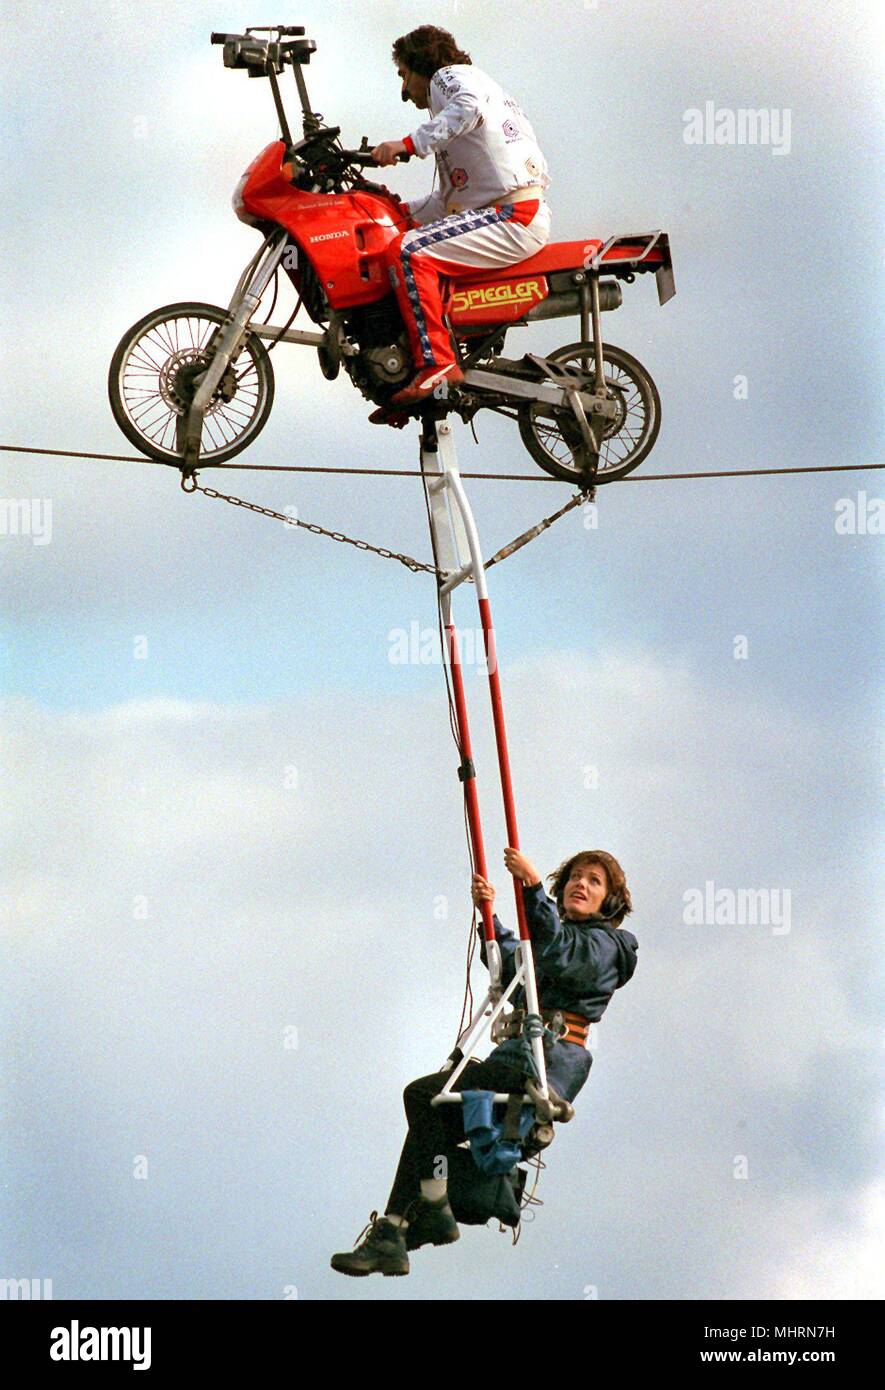 Atrevido y libre de vértigo: El presentador de televisión, Birgit Schrowange está en la cuerda floja 8.5.1997 por el artista Johann Traber en la bicicleta, sentados en una 'sala' sentado en unos 25 metros de altura en Breisach del francés en el lado alemán del Rin. El espectacular acto de equilibrio se registró para el RTL mostrar 'la vida, el deseo de vivir" (emisión de 20.6.1997). Uso | en todo el mundo Foto de stock